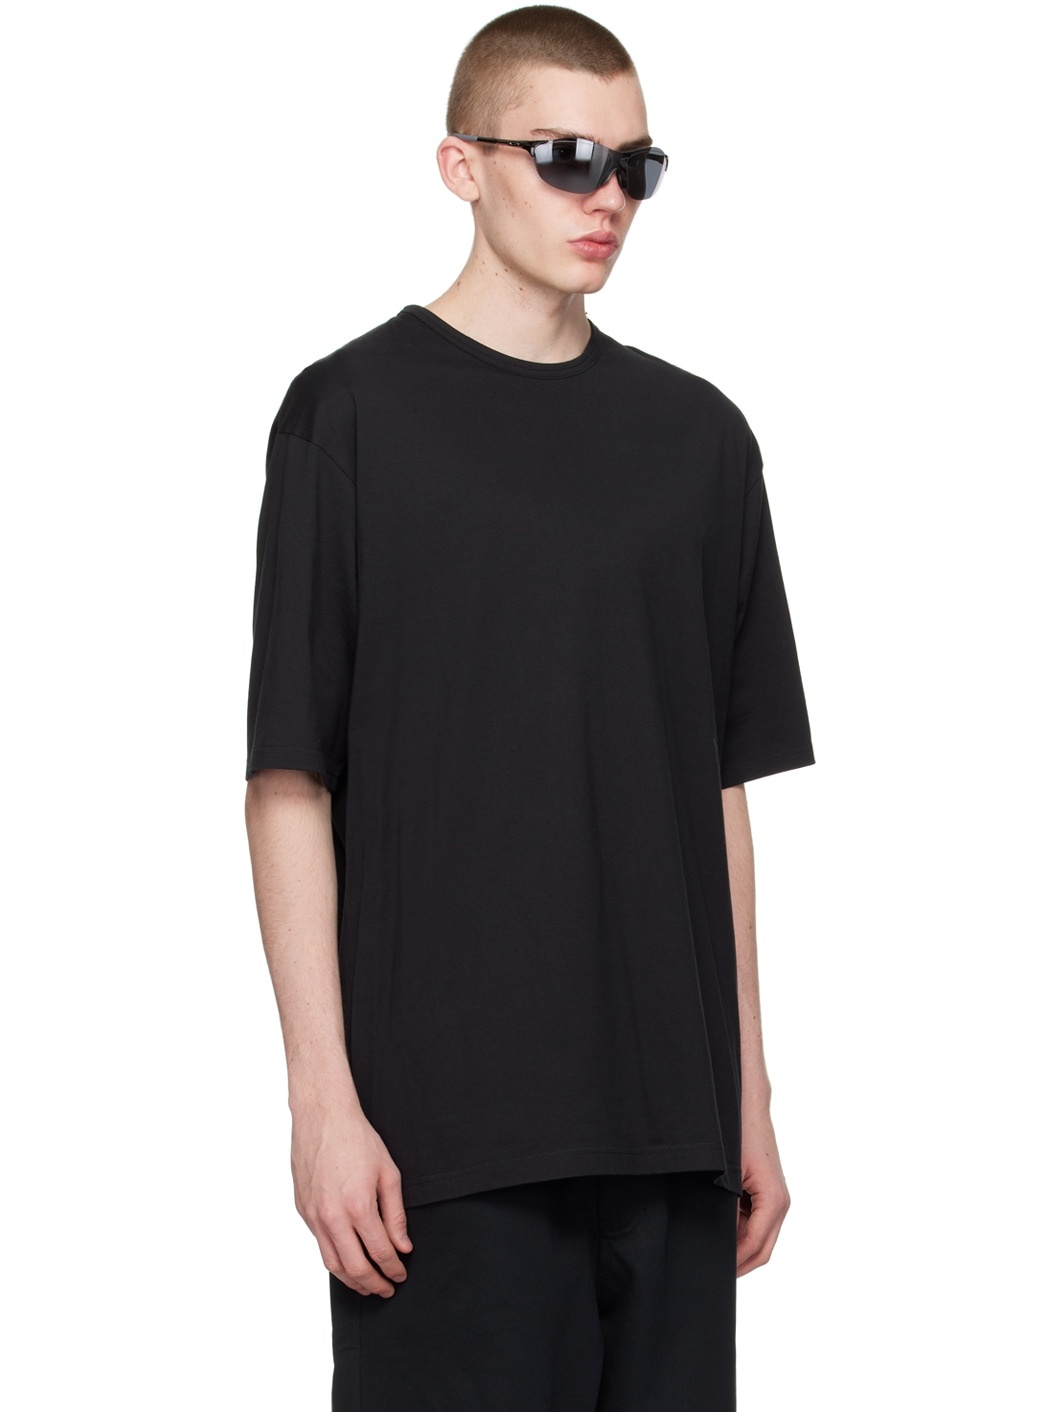 Black Boxy T-Shirt - 2